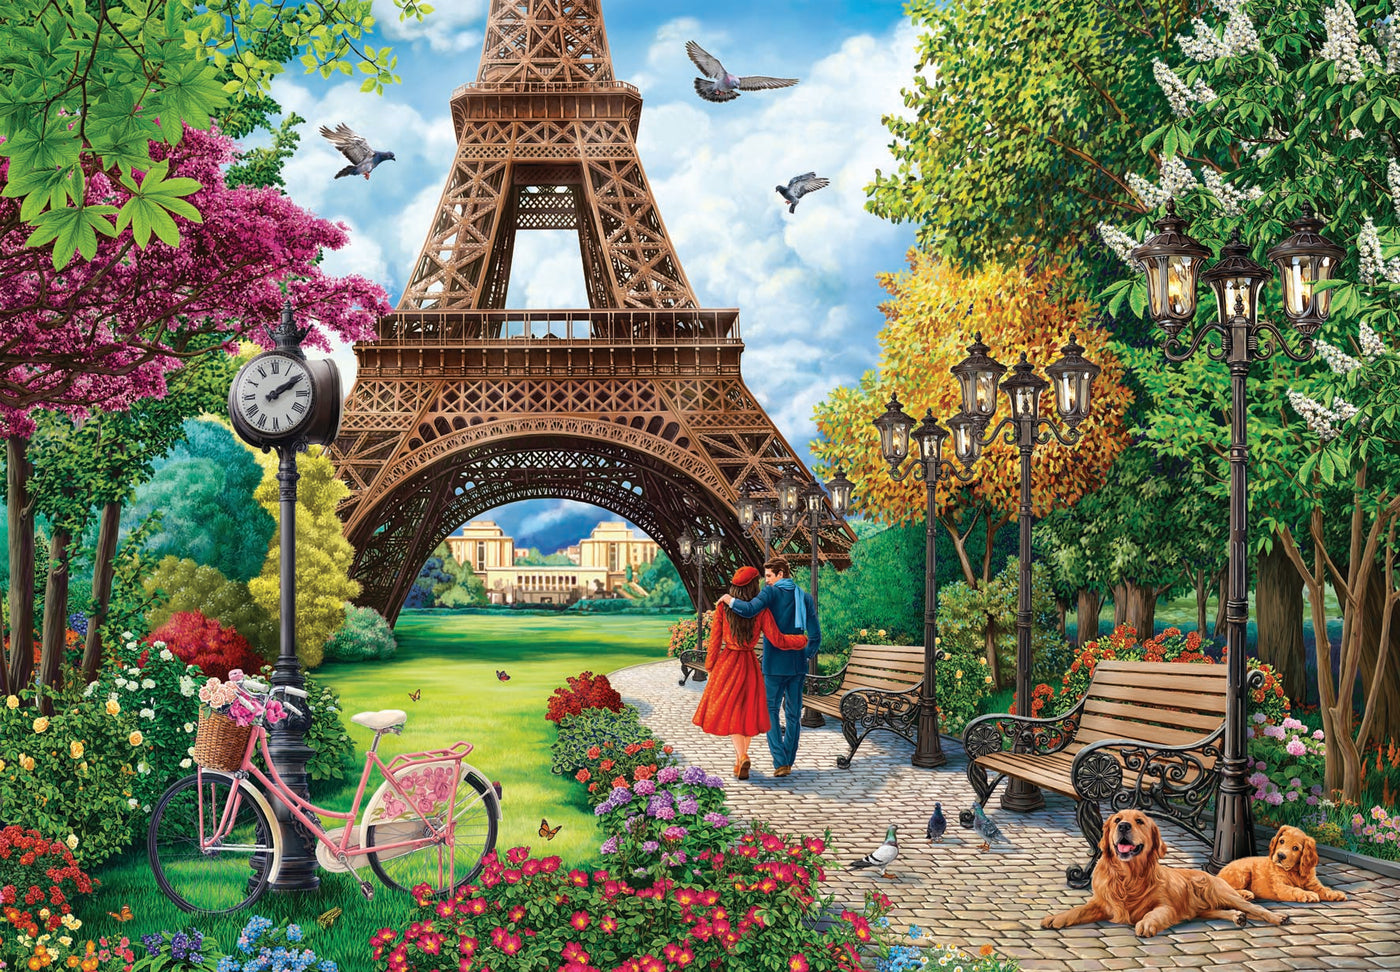 Puzzle Paris Vue D'en Haut 1000 Pieces - N/A - Kiabi - 15.49€